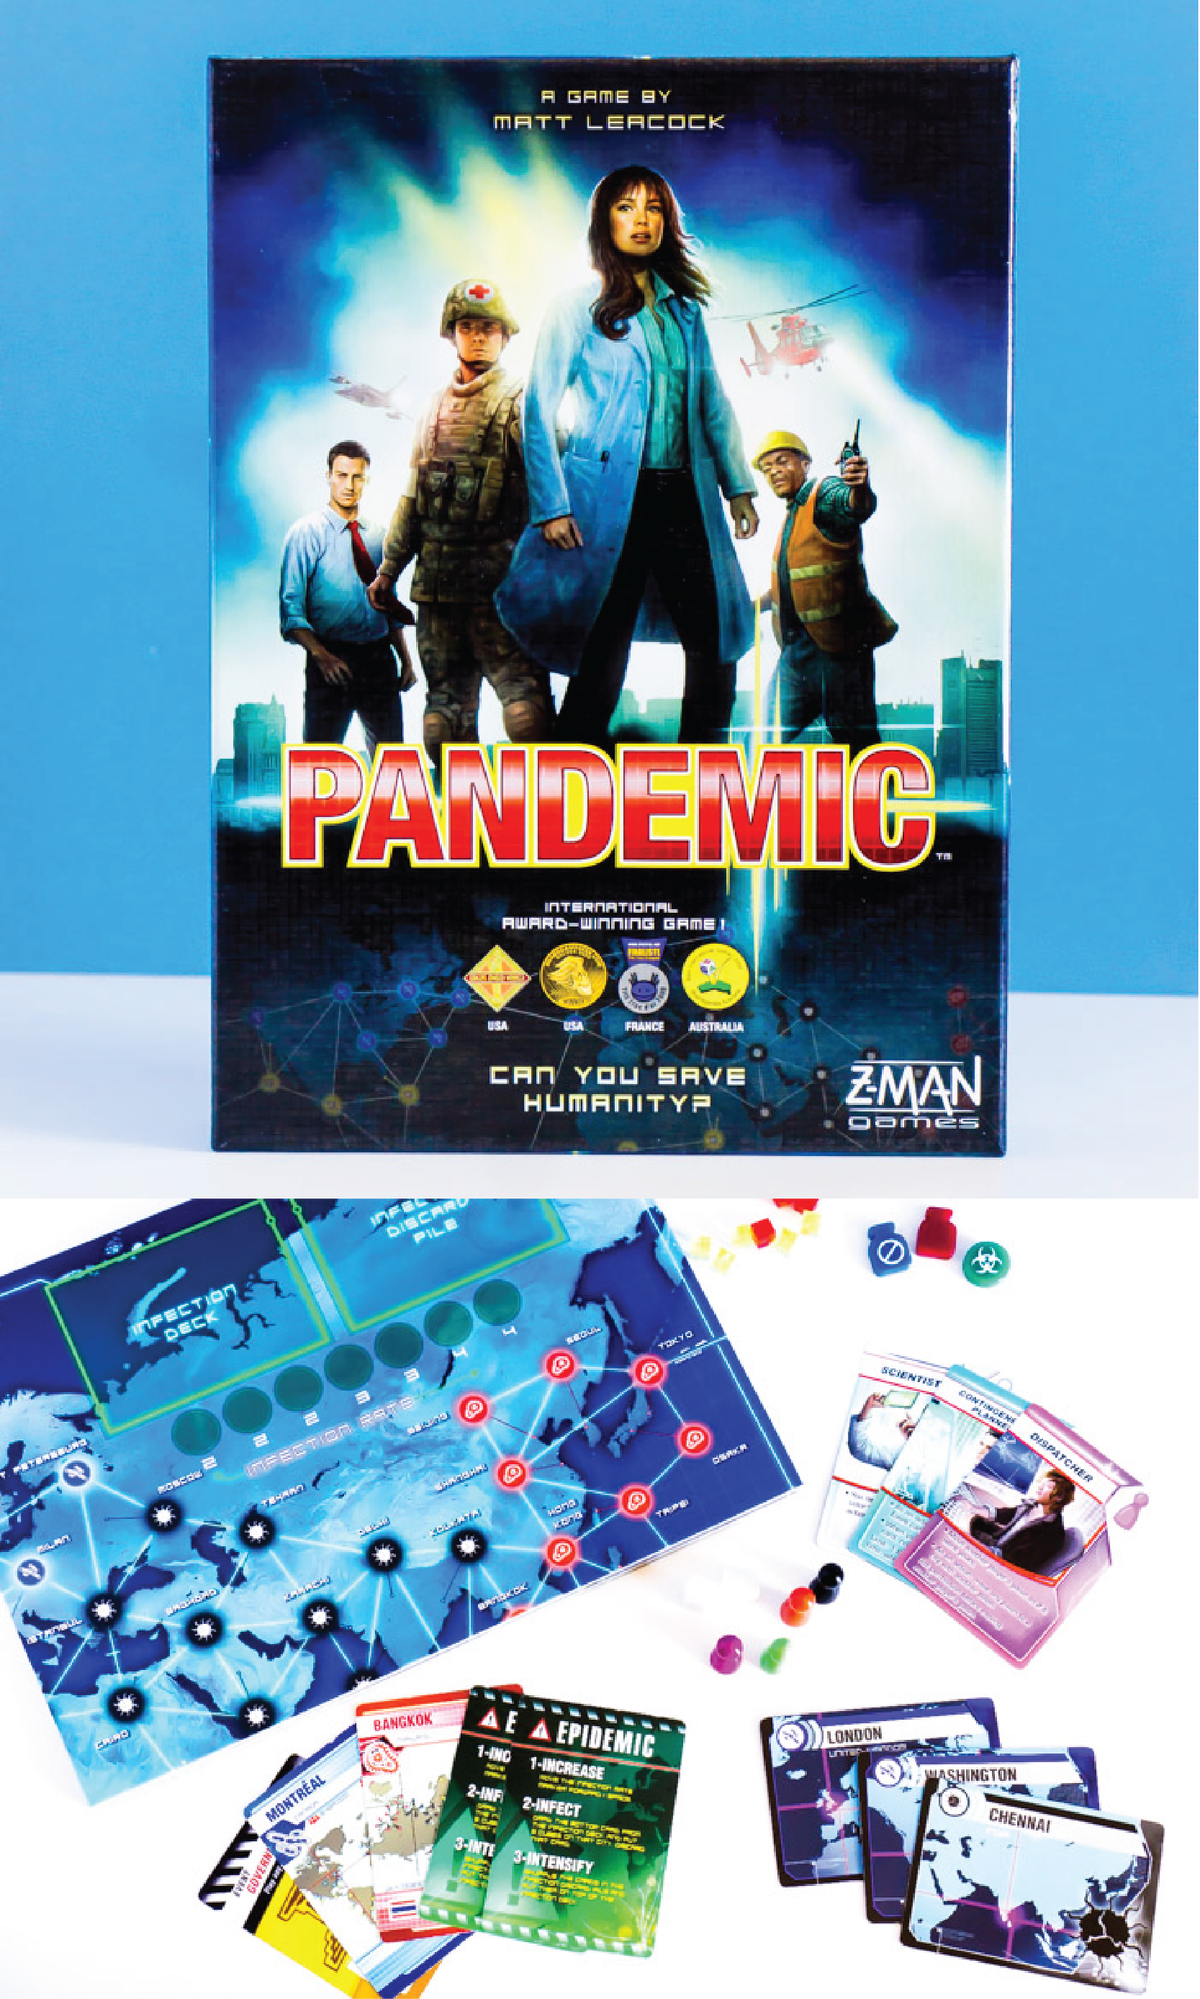 Desková hra Pandemic je jednou z nejlepších deskových her pro dospělé vůbec